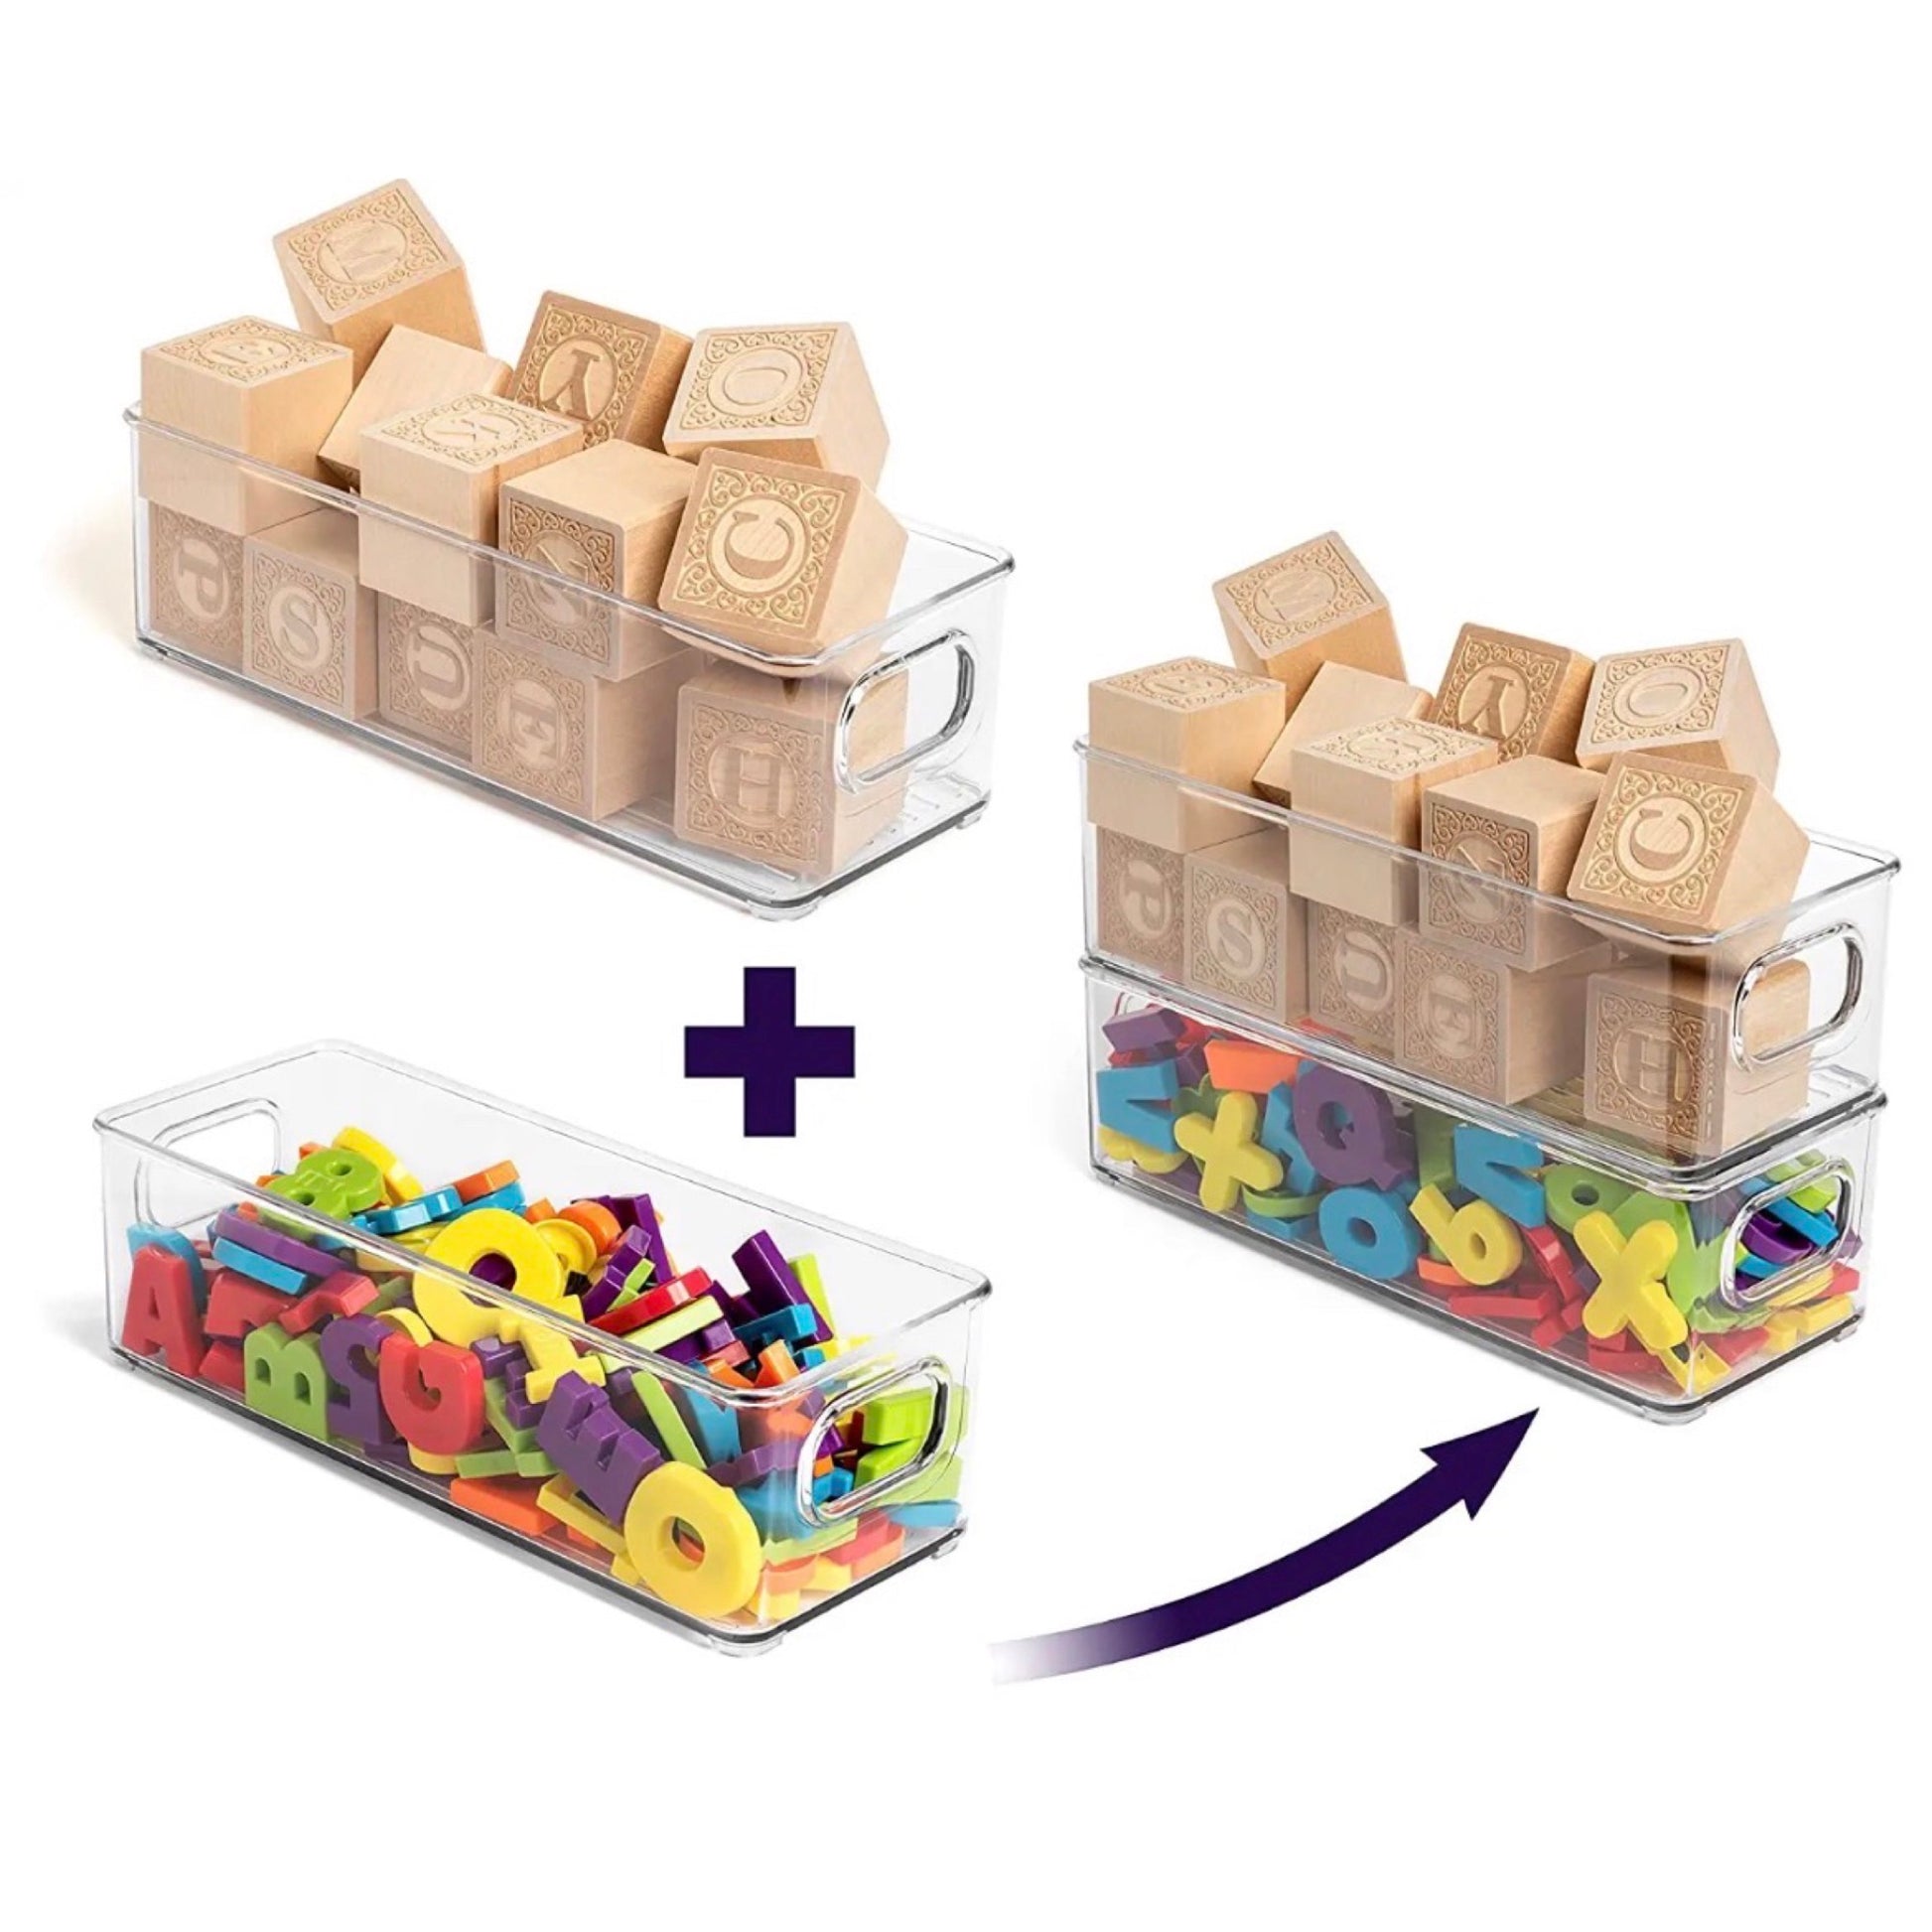 Transparente Aufbewahrungsboxen als kreative Lösung für Spielzeugorganisation. Eine Box ist gefüllt mit hölzernen Alphabet-Blöcken, eine andere mit bunten, plastischen Buchstaben und Zahlen. Die Abbildung zeigt, wie sich die Boxen stapeln lassen, was für Ordnung sorgt und gleichzeitig den Zugriff auf die Spielzeuge erleichtert. Ideal für Kinderzimmer oder Lernbereiche.